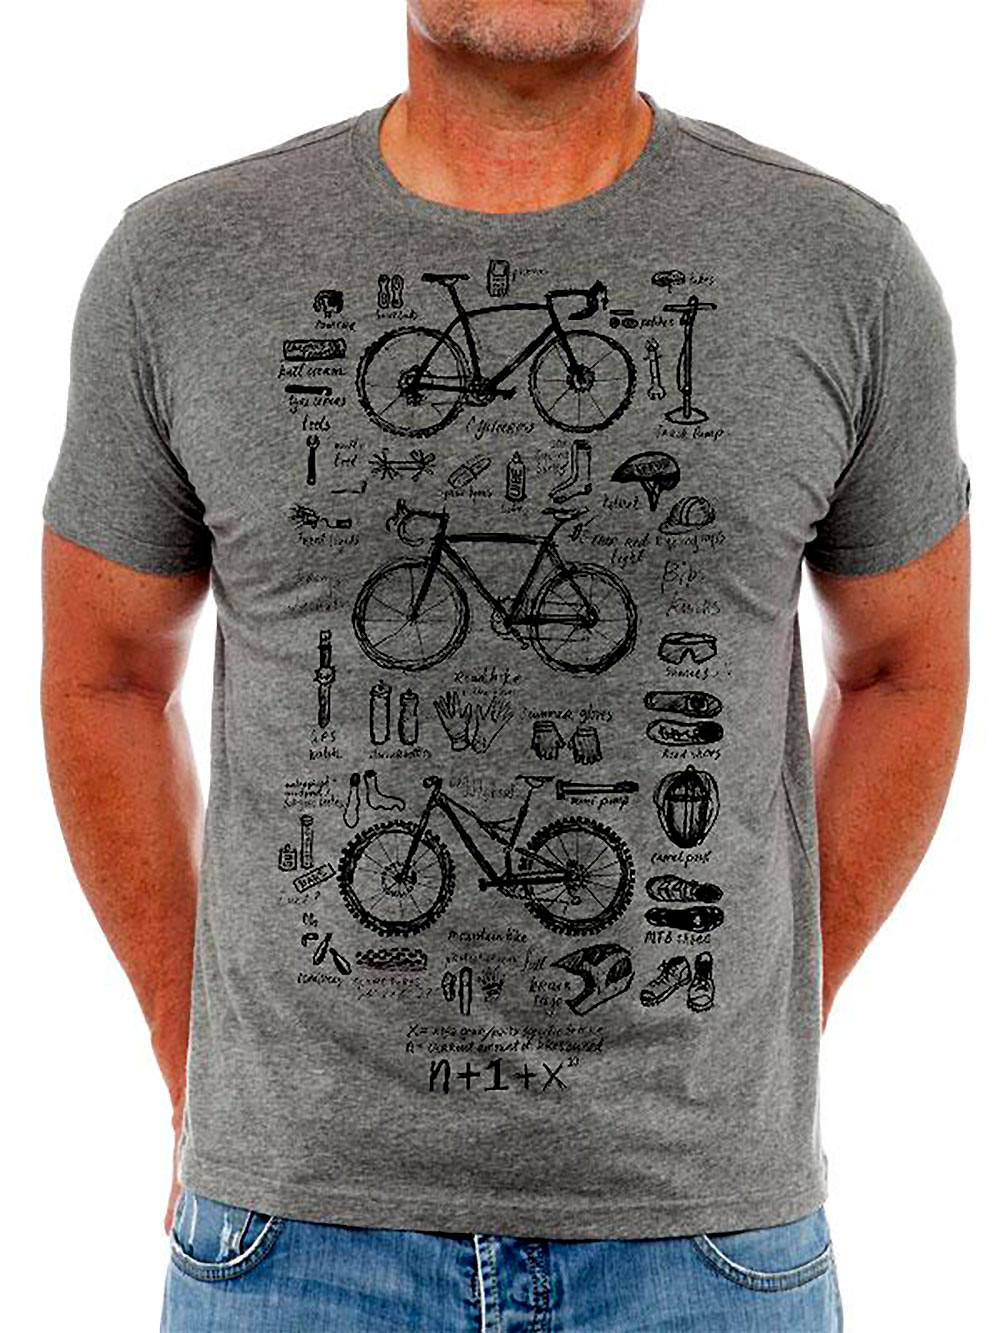 Découvrez Cyclology, une marque de vêtements dédiée au vélo